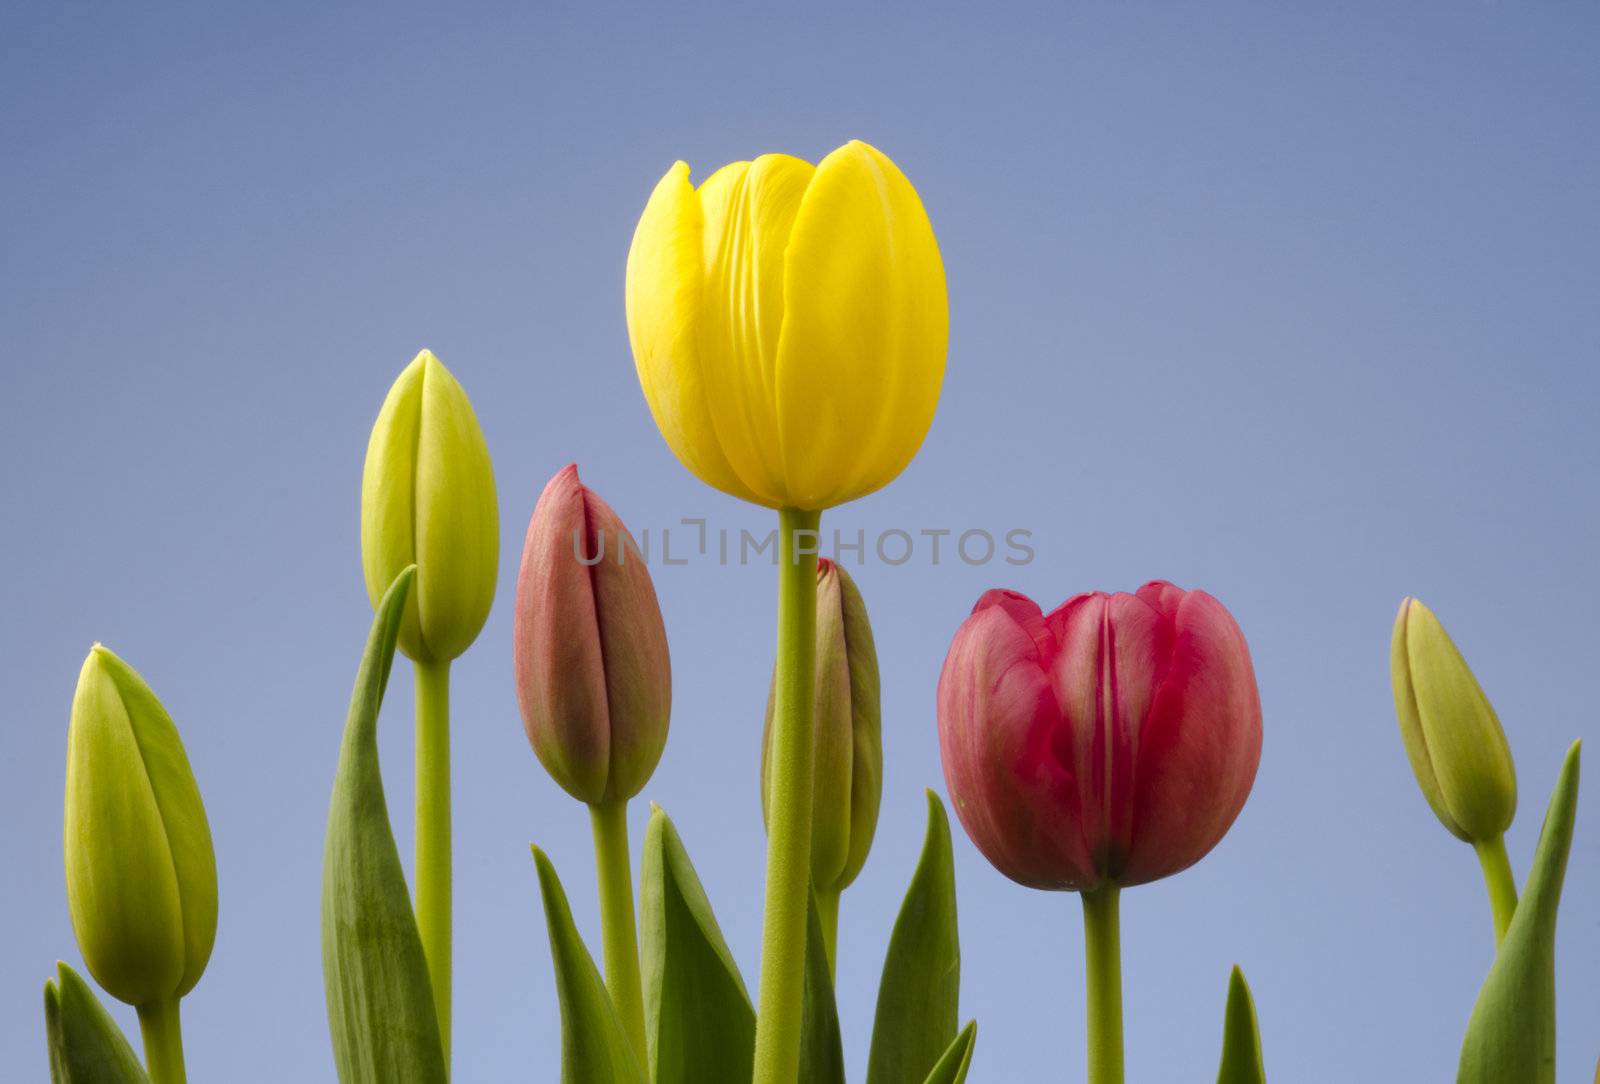 Tulips With Blue Sky by Gordo25